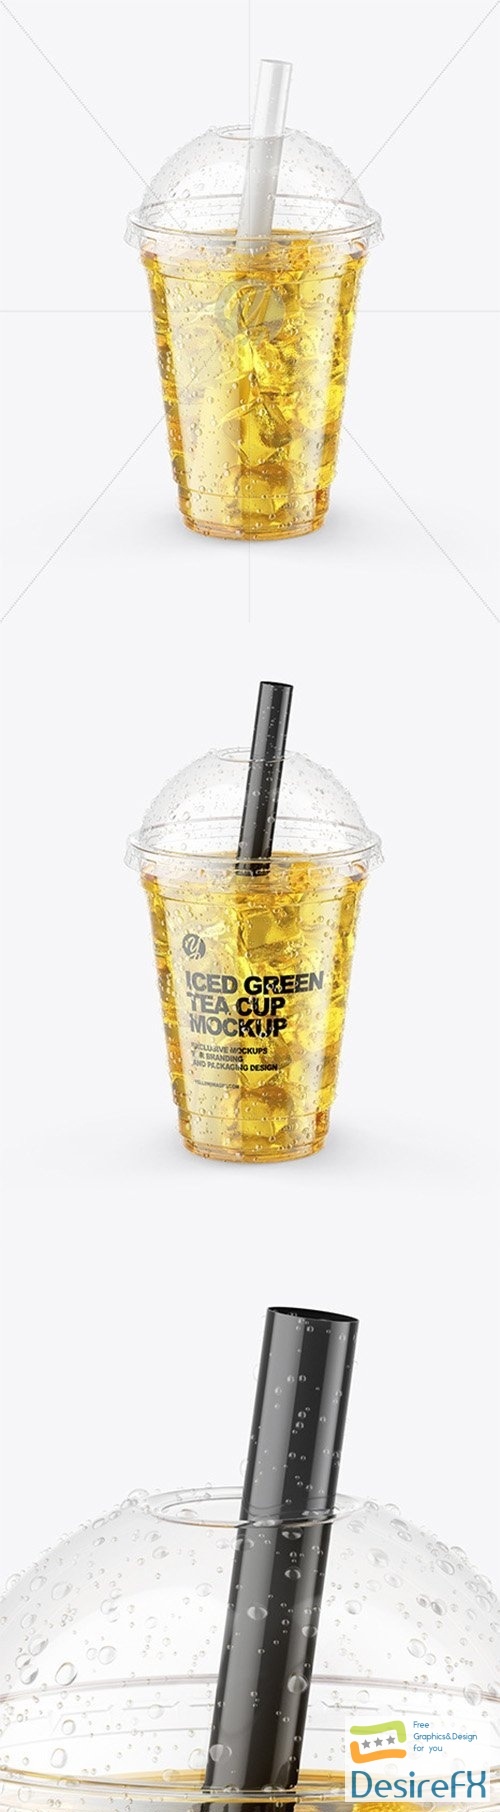 Iced Green Tea Cup Mockup 64942